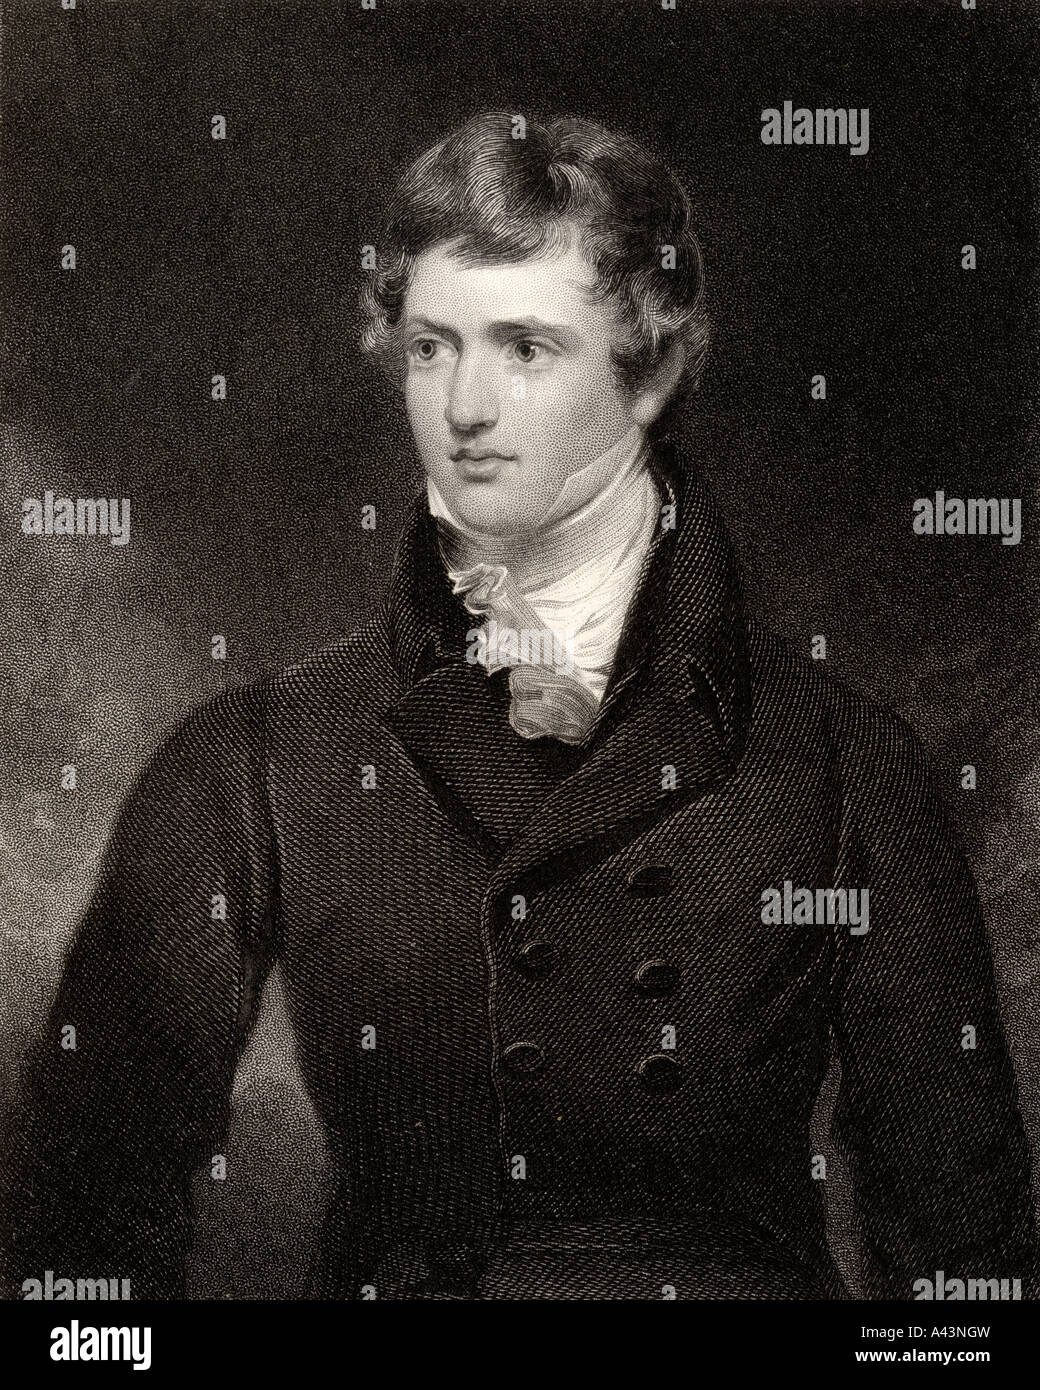 Edward George Geoffrey Smith-Stanley, 14º Conde de Derby Lord Stanley, 1799 - 1869. Estadista inglés y tres veces primer Ministro del Reino Unido. Foto de stock